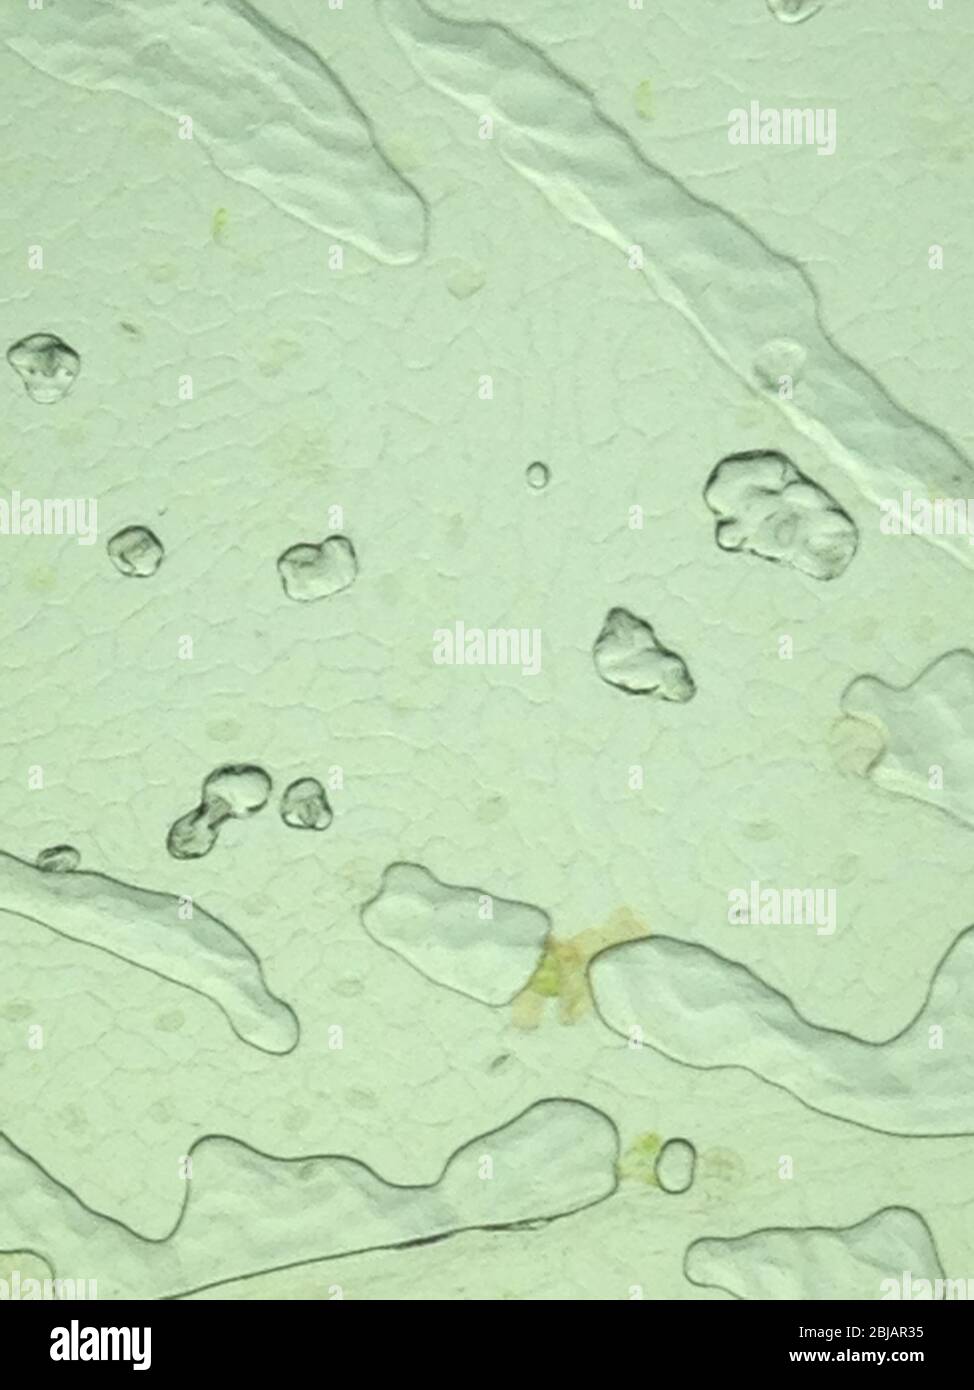 vue microscopique de la surface de la lame montrant les cellules végétales Banque D'Images